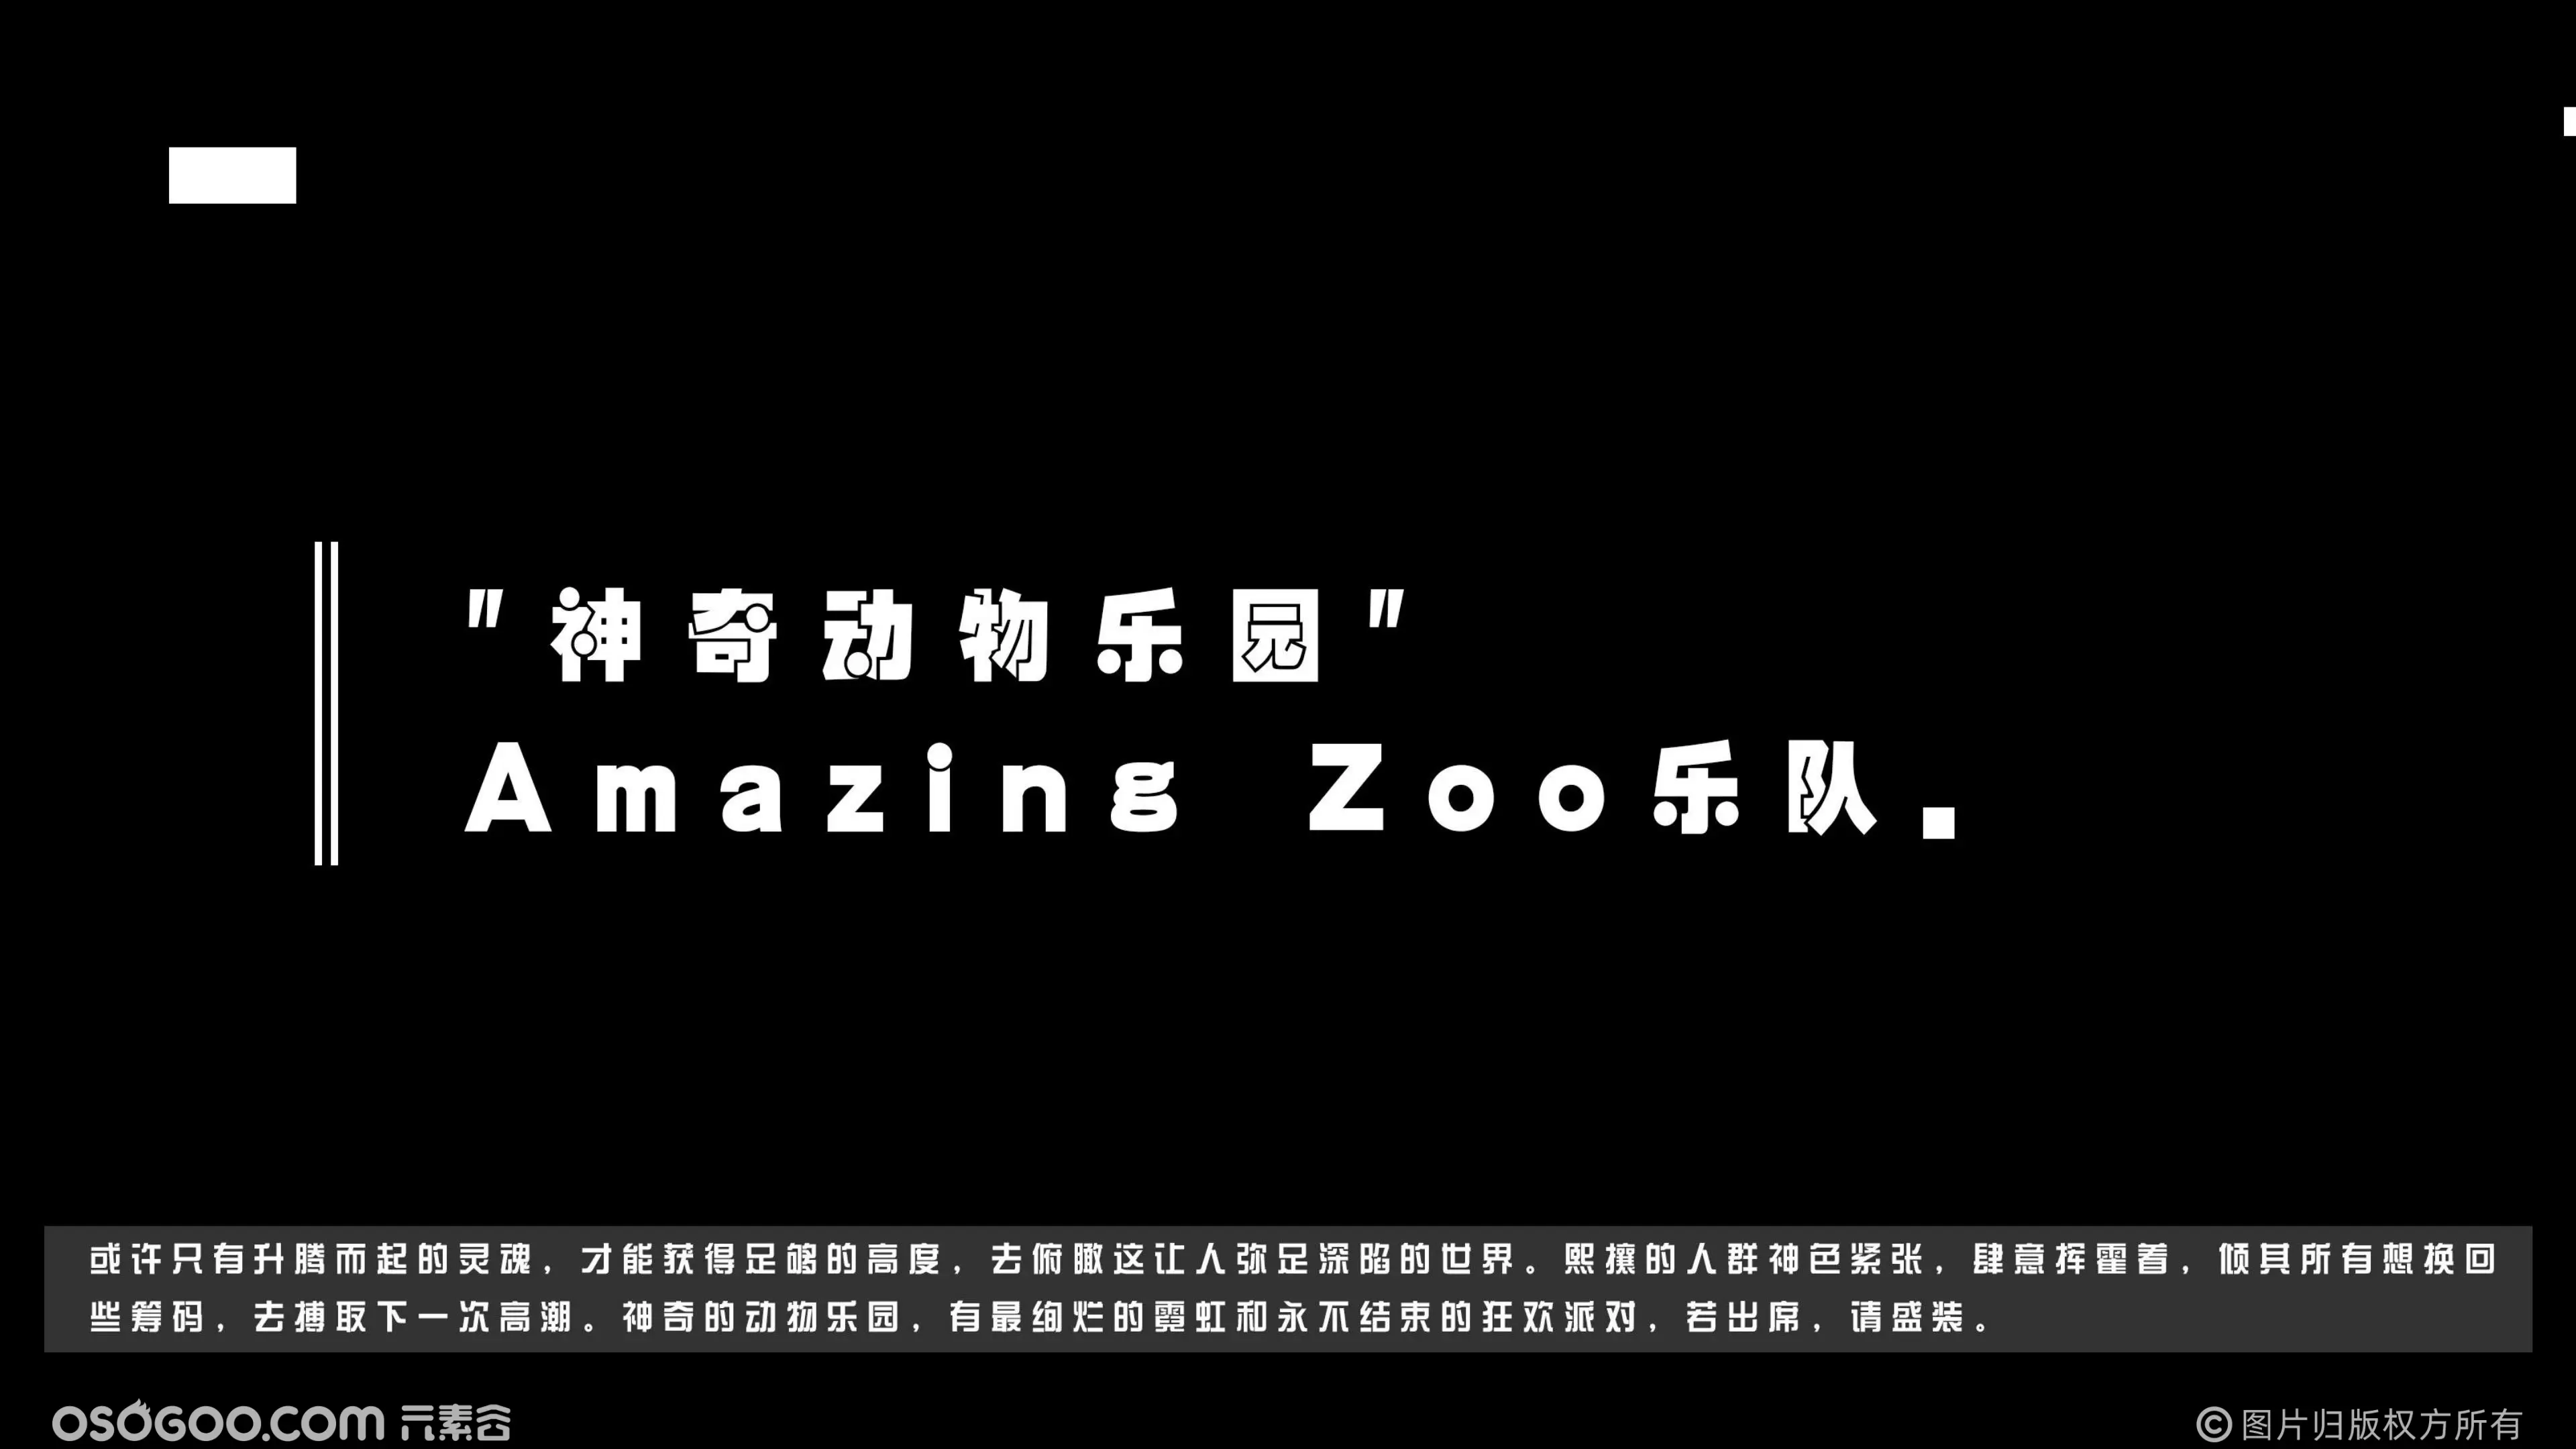 Amazing Zoo神奇动物乐园乐队 